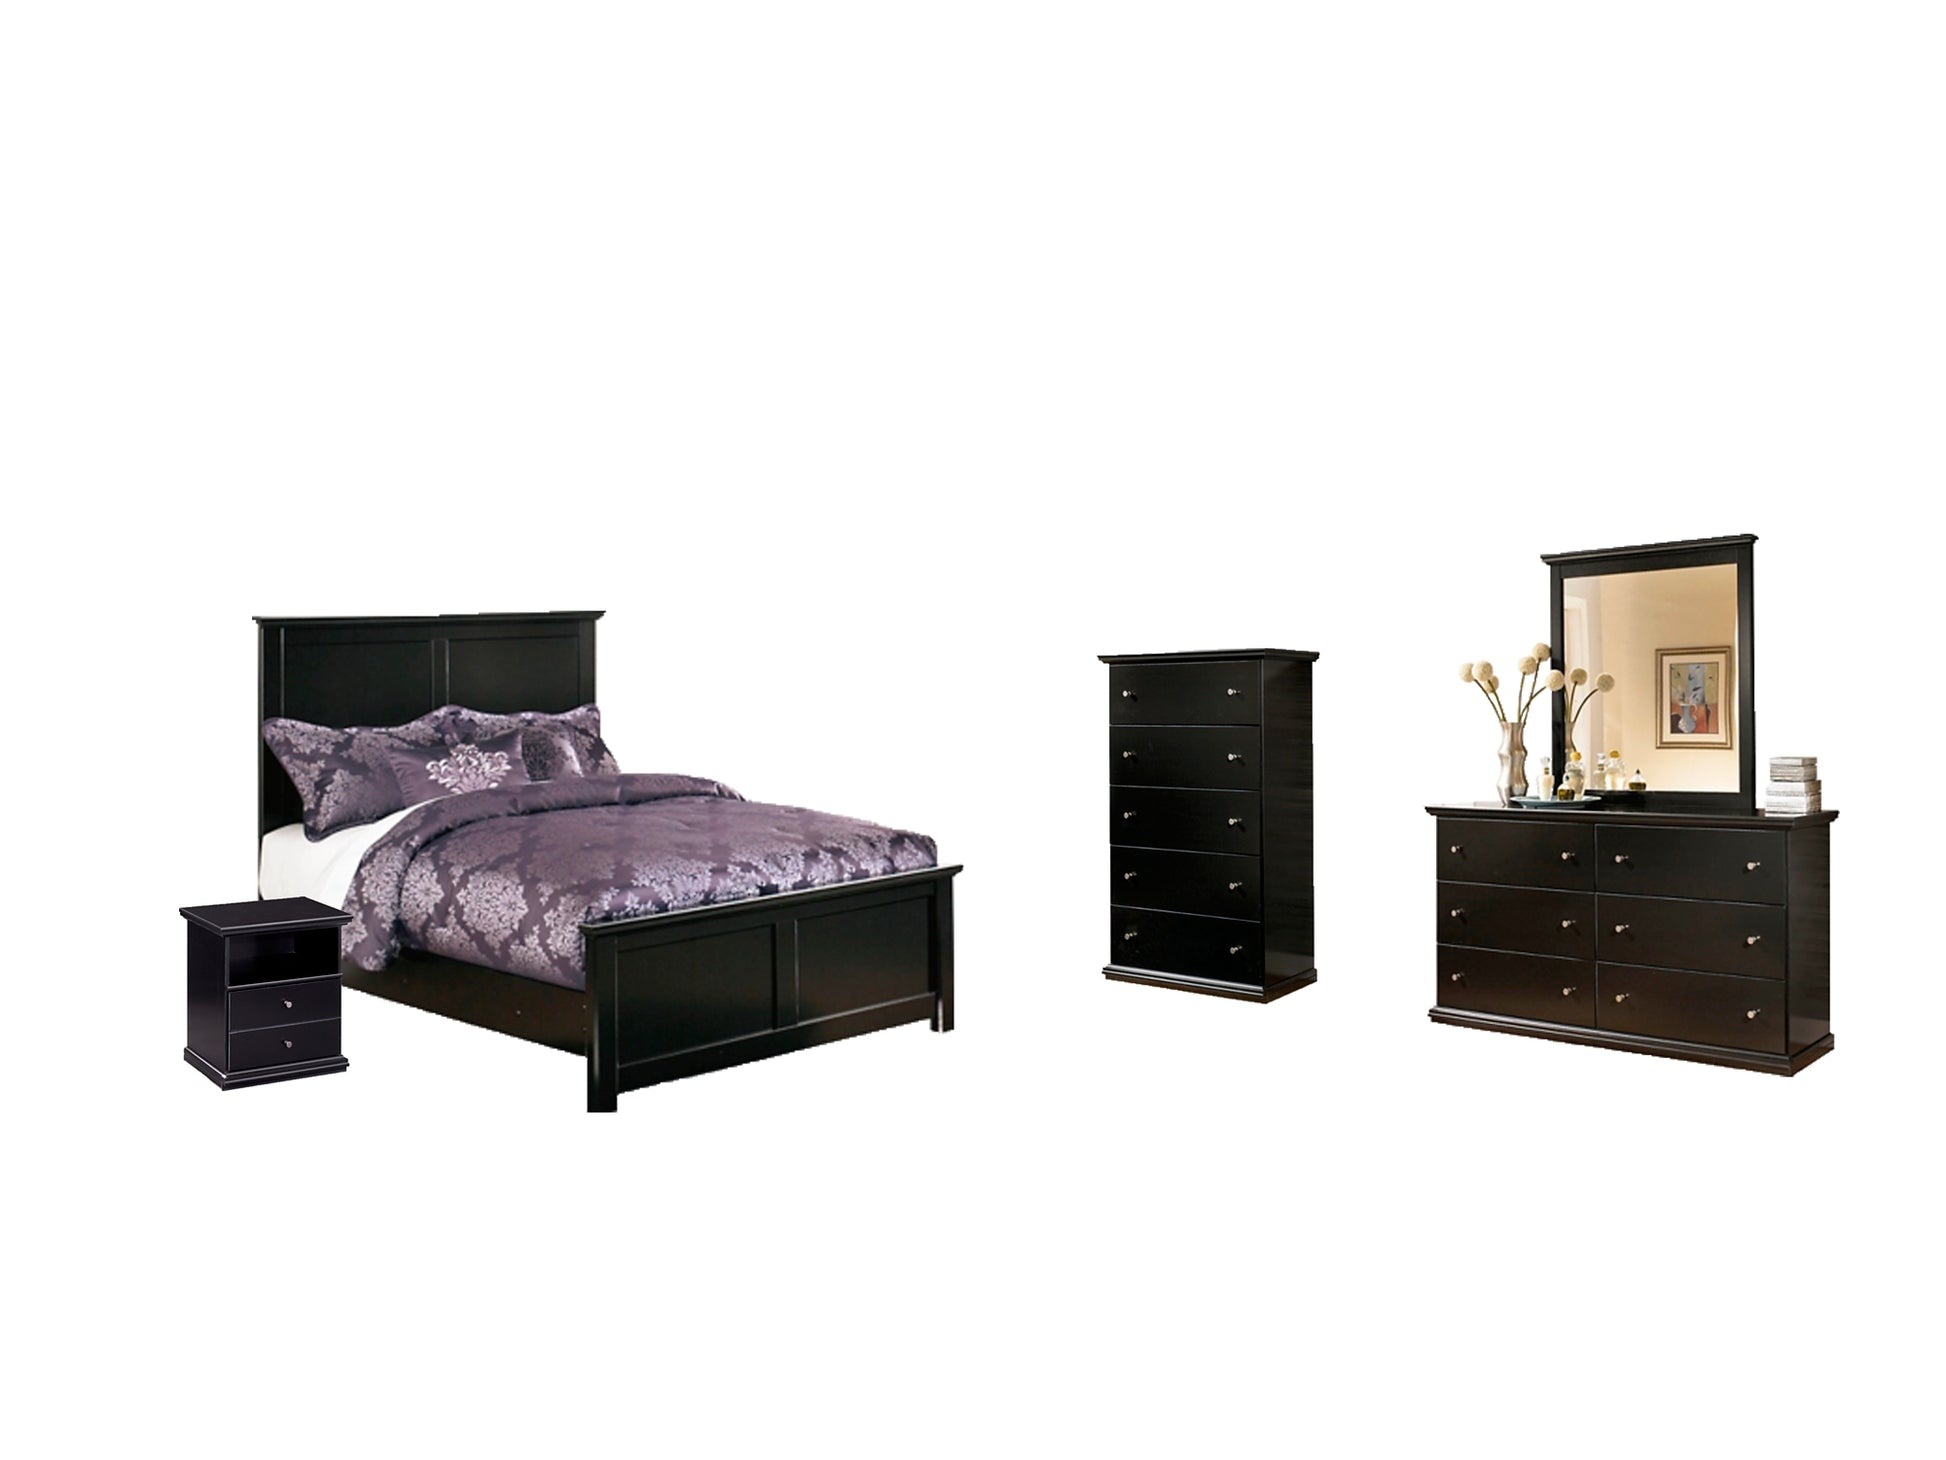 Maribel Queen Panel Bed with Mirrored Dresser, Chest and Nightstand Wilson Furniture (OH)  in Bridgeport, Ohio. Serving Bridgeport, Yorkville, Bellaire, & Avondale